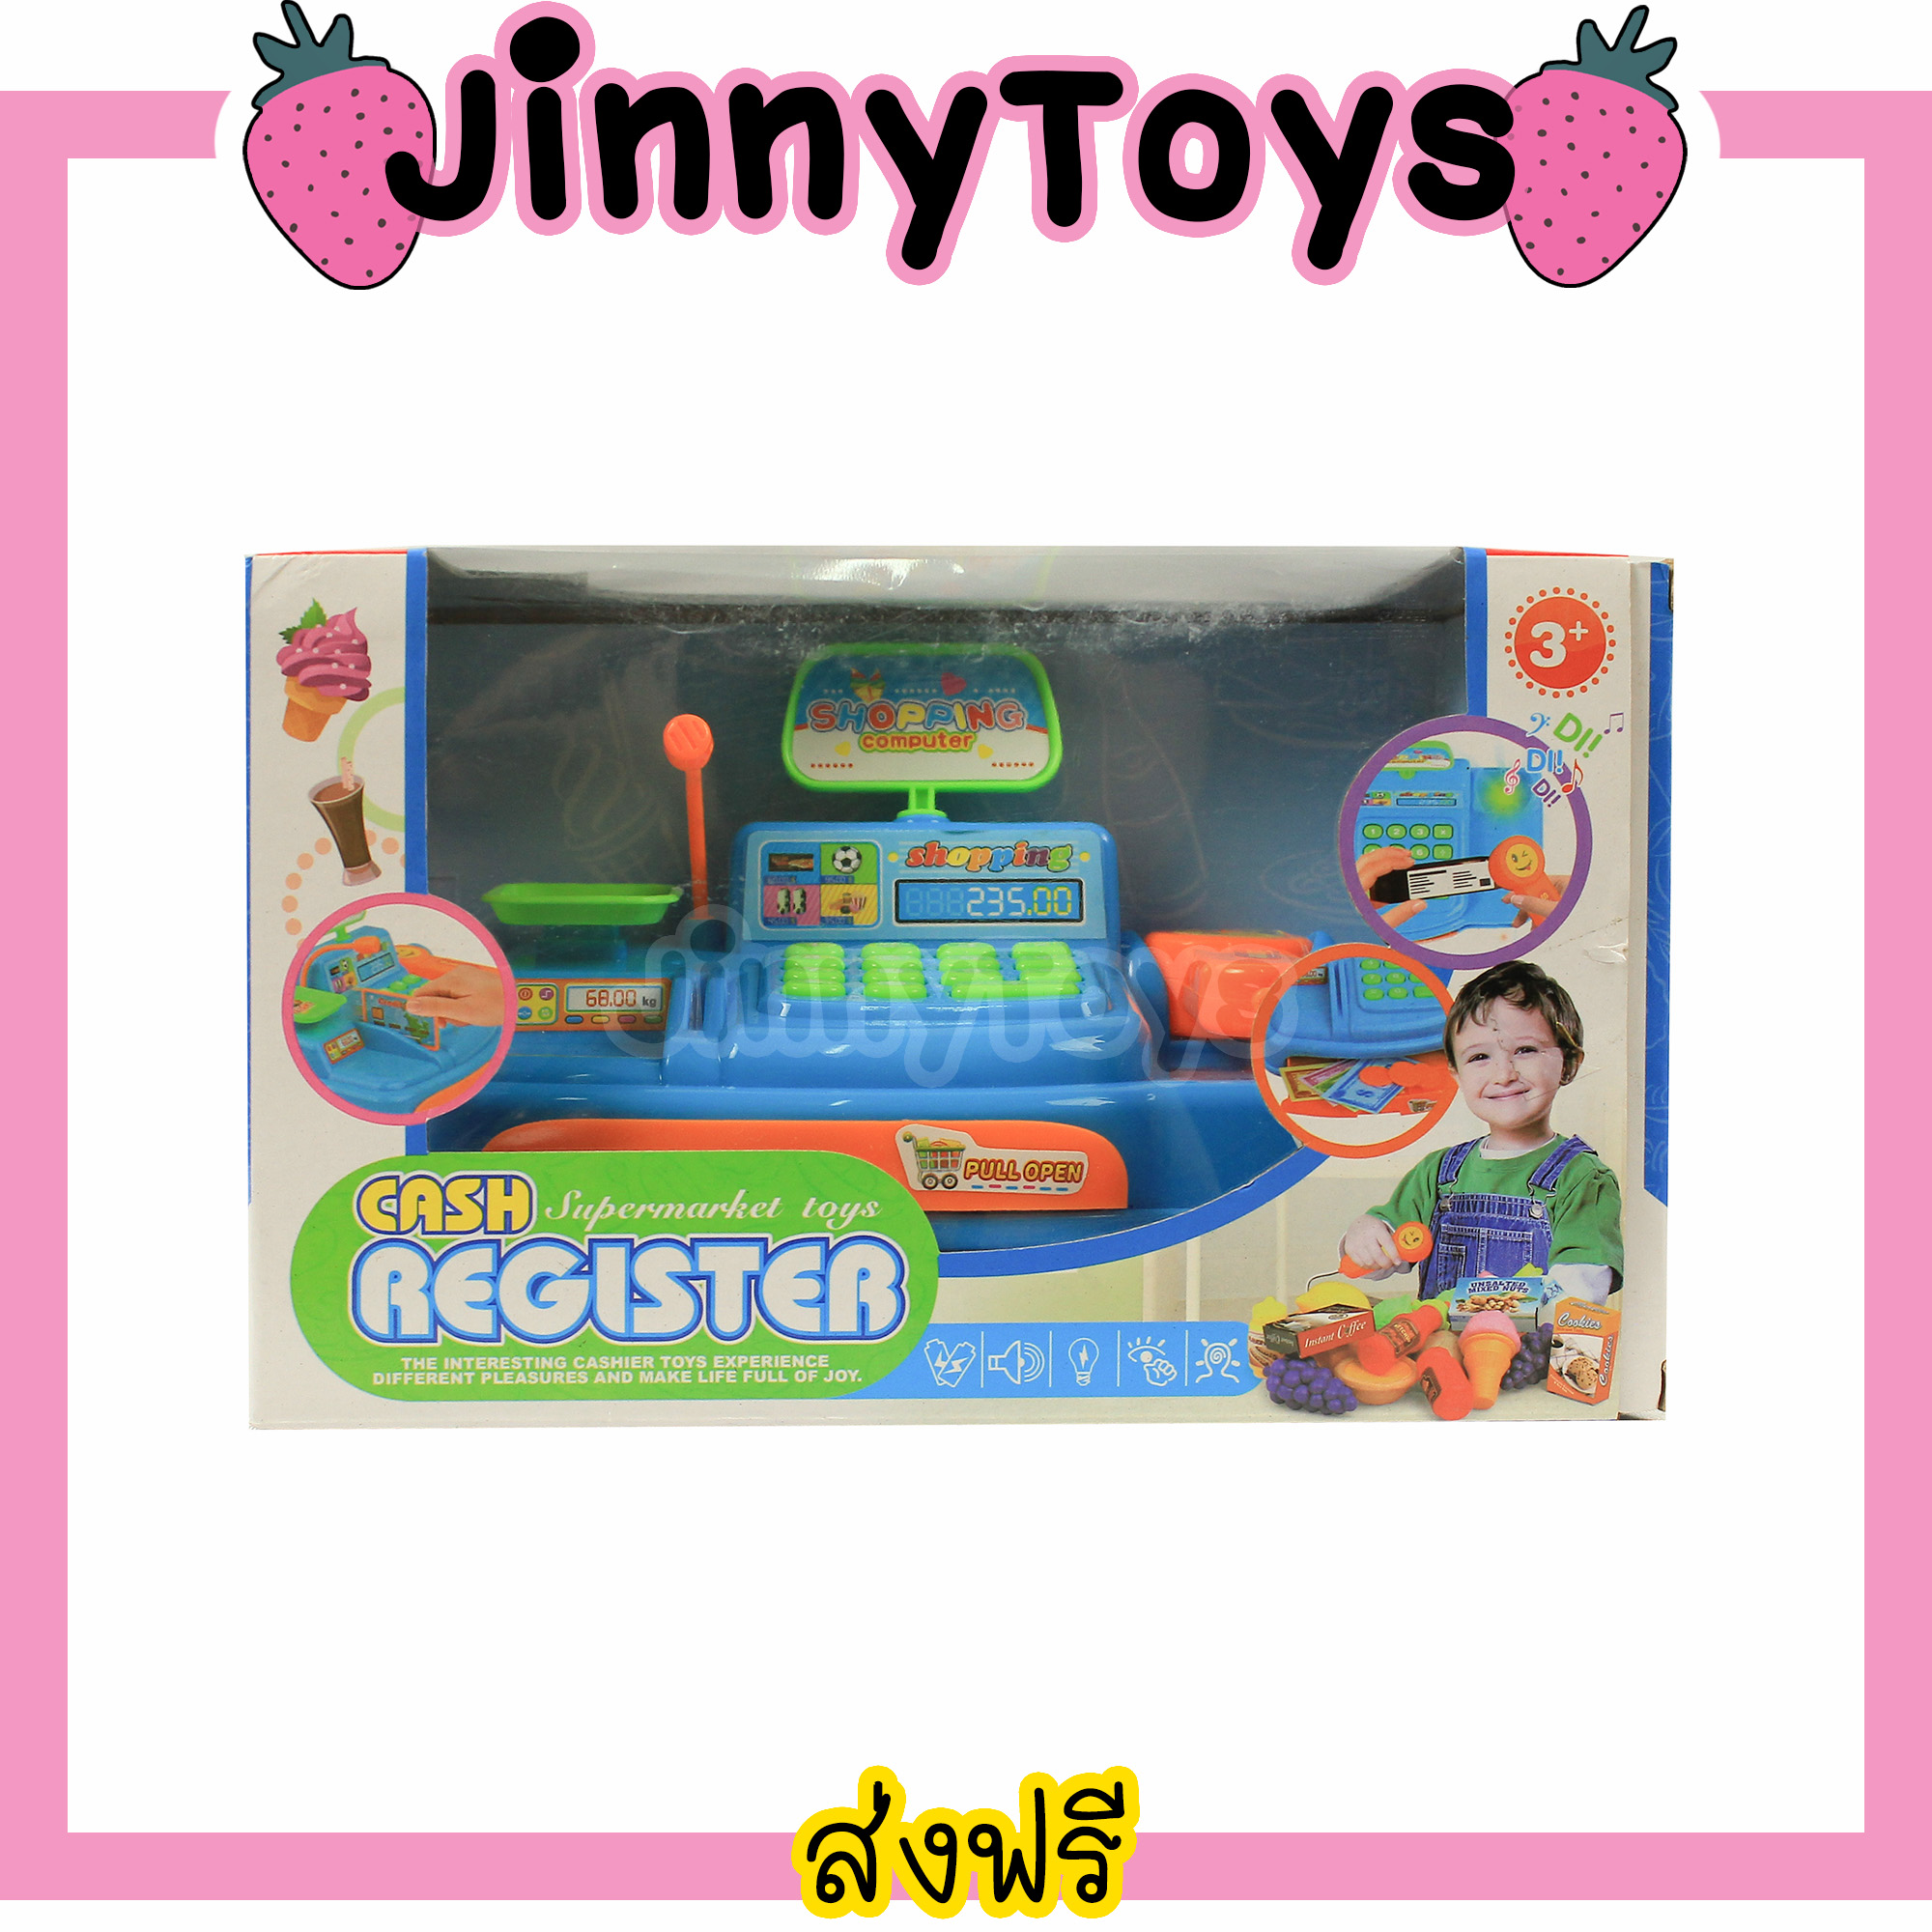 Jinny Toys ของเล่นเด็ก แคทเชียร์ ของเล่นแคชเชีย สีฟ้า Cash Register Supermarket Toys แคทเชียร์ของเล่น ของเล่นแคชเชียร์ ของเล่นซุปเปอร์มาร์เก็ต แคทเชียของเล่น แคชเชียร์เด็ก ของเล่น แคทเชีย ชุดแคชเชีย ของเล่นจำลอง ของเล่นเด็กหญิง ของเล่นเด็กผู้หญิง